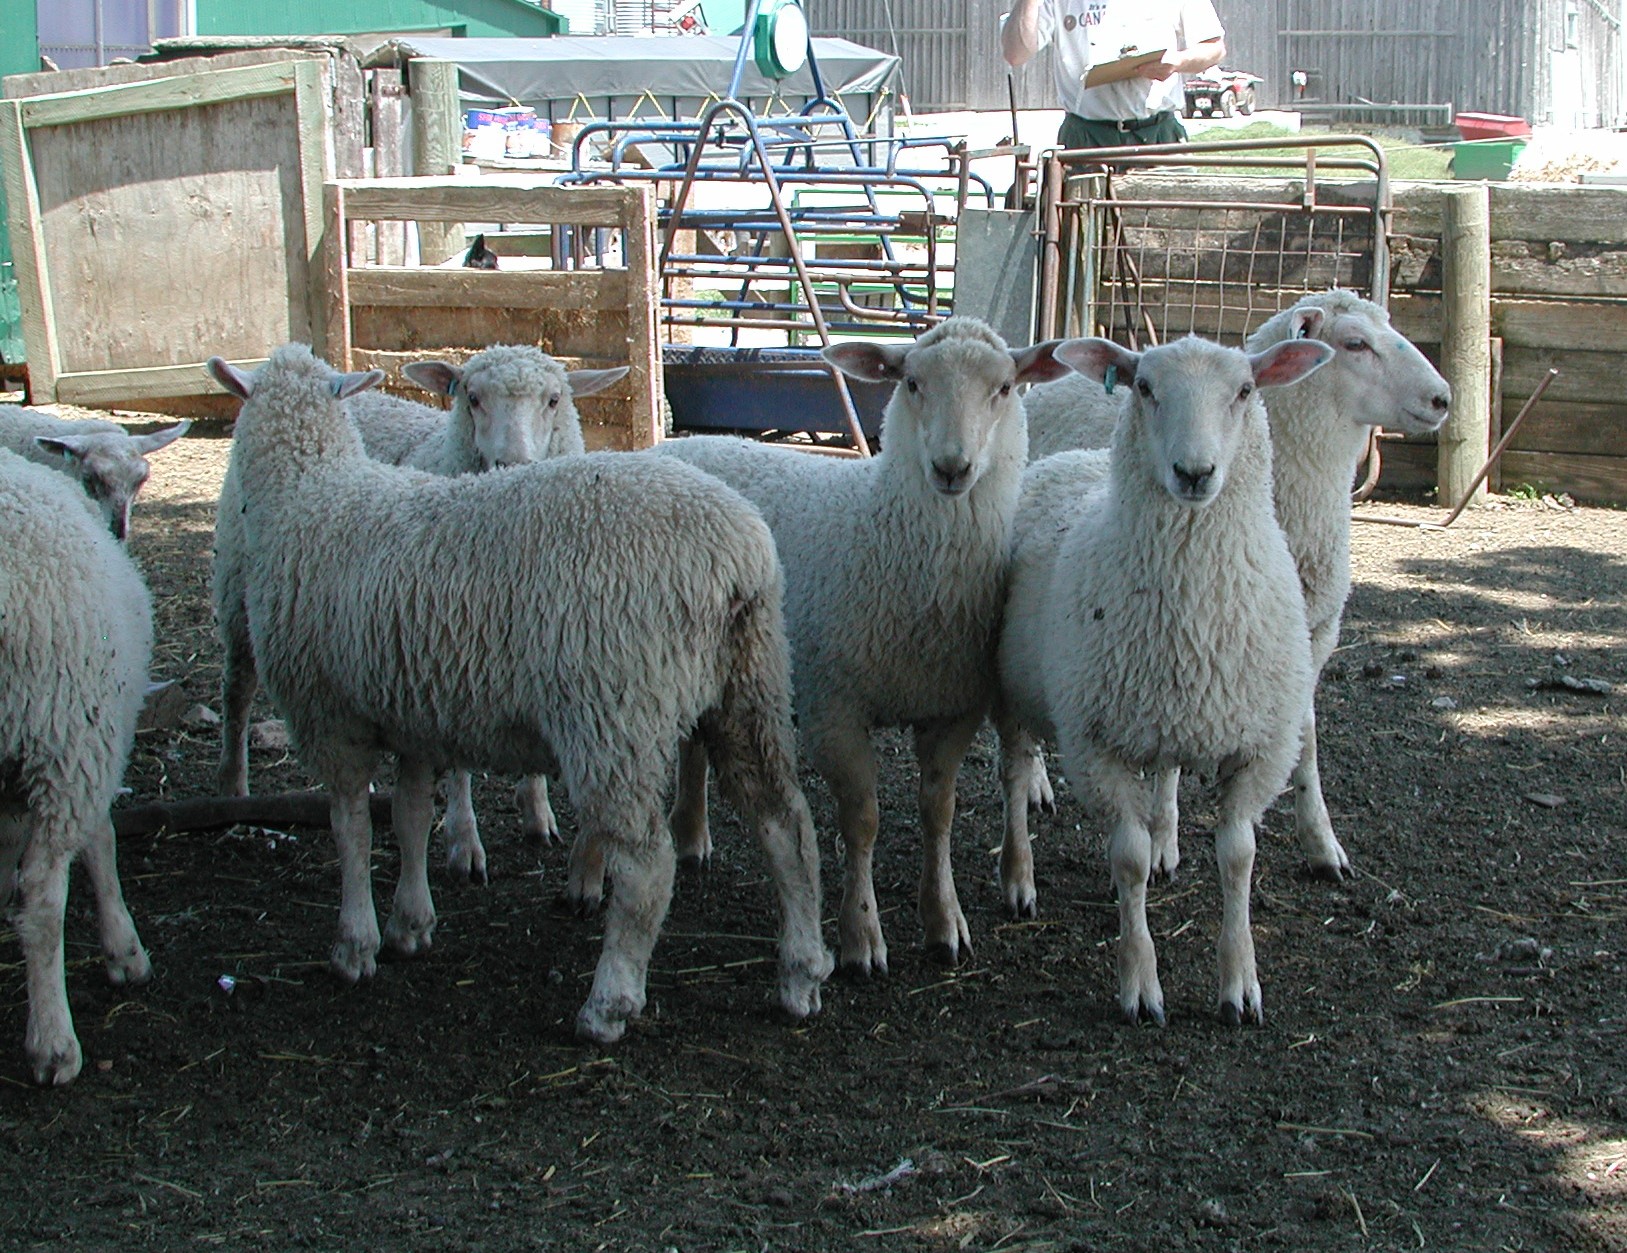 Sheep in yard